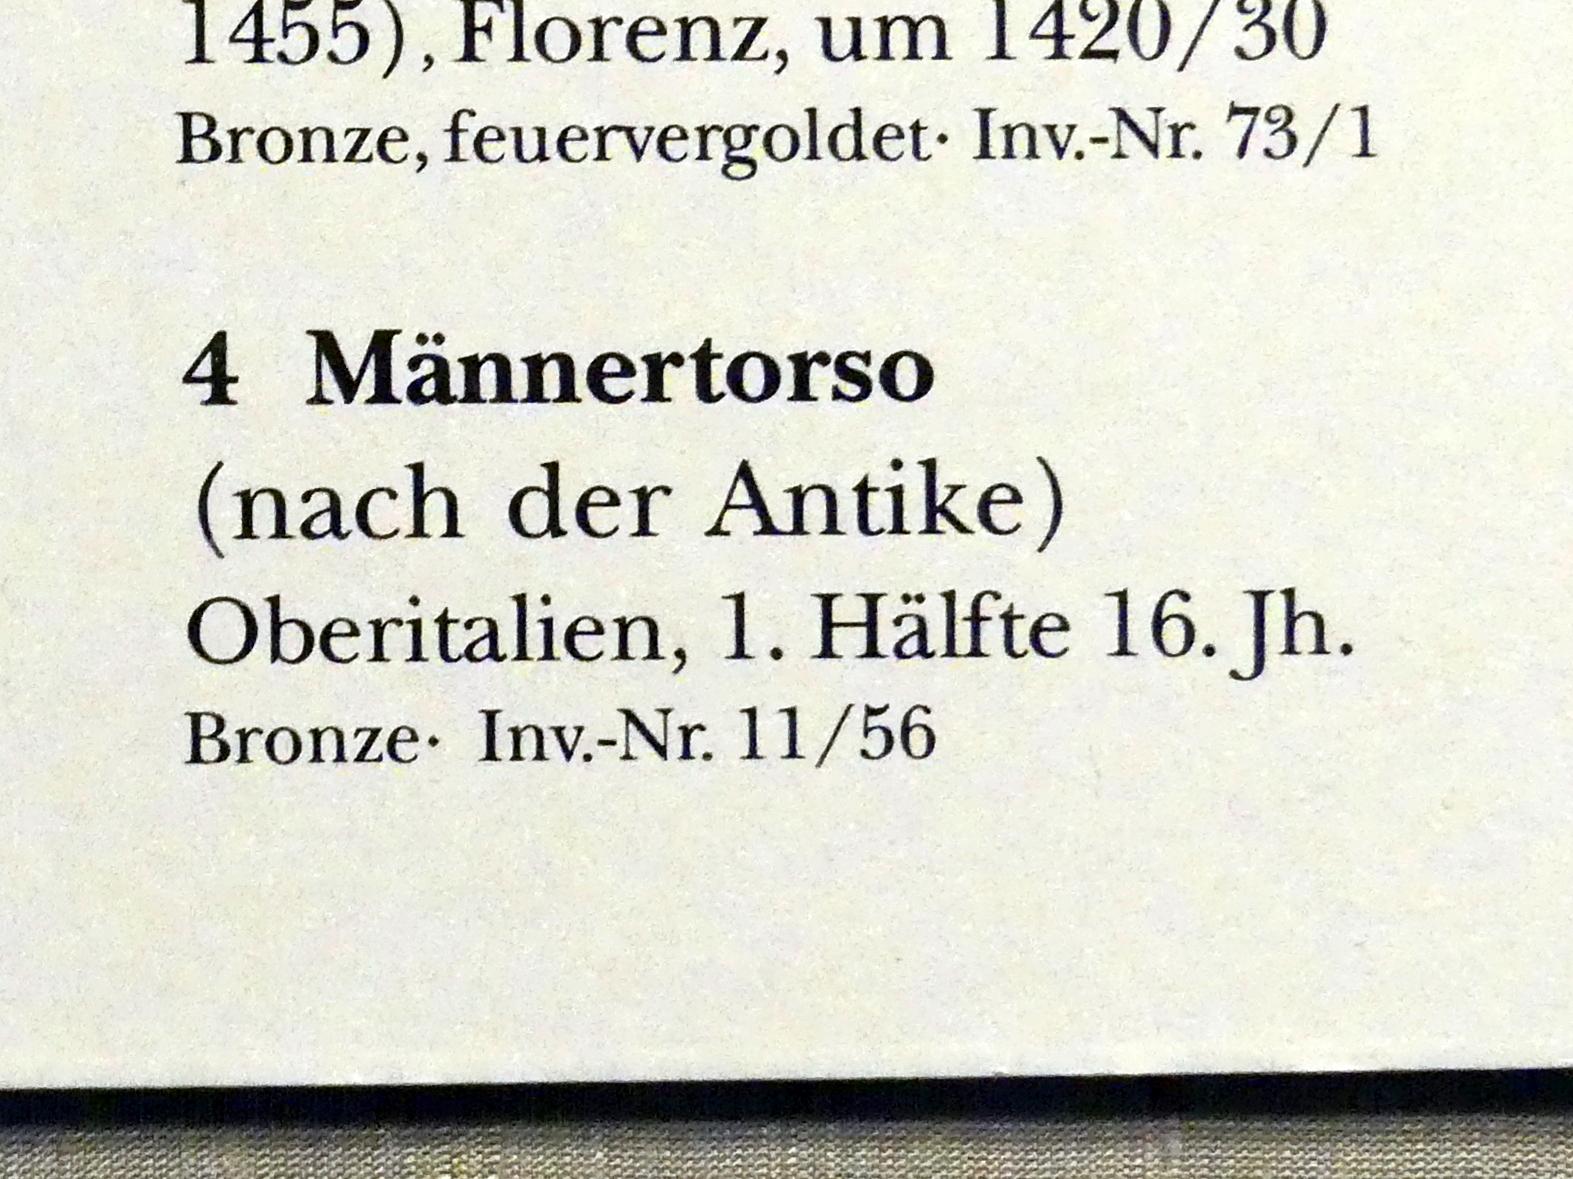 Männertorso, München, Bayerisches Nationalmuseum, Saal 23, 1. Hälfte 16. Jhd., Bild 2/2